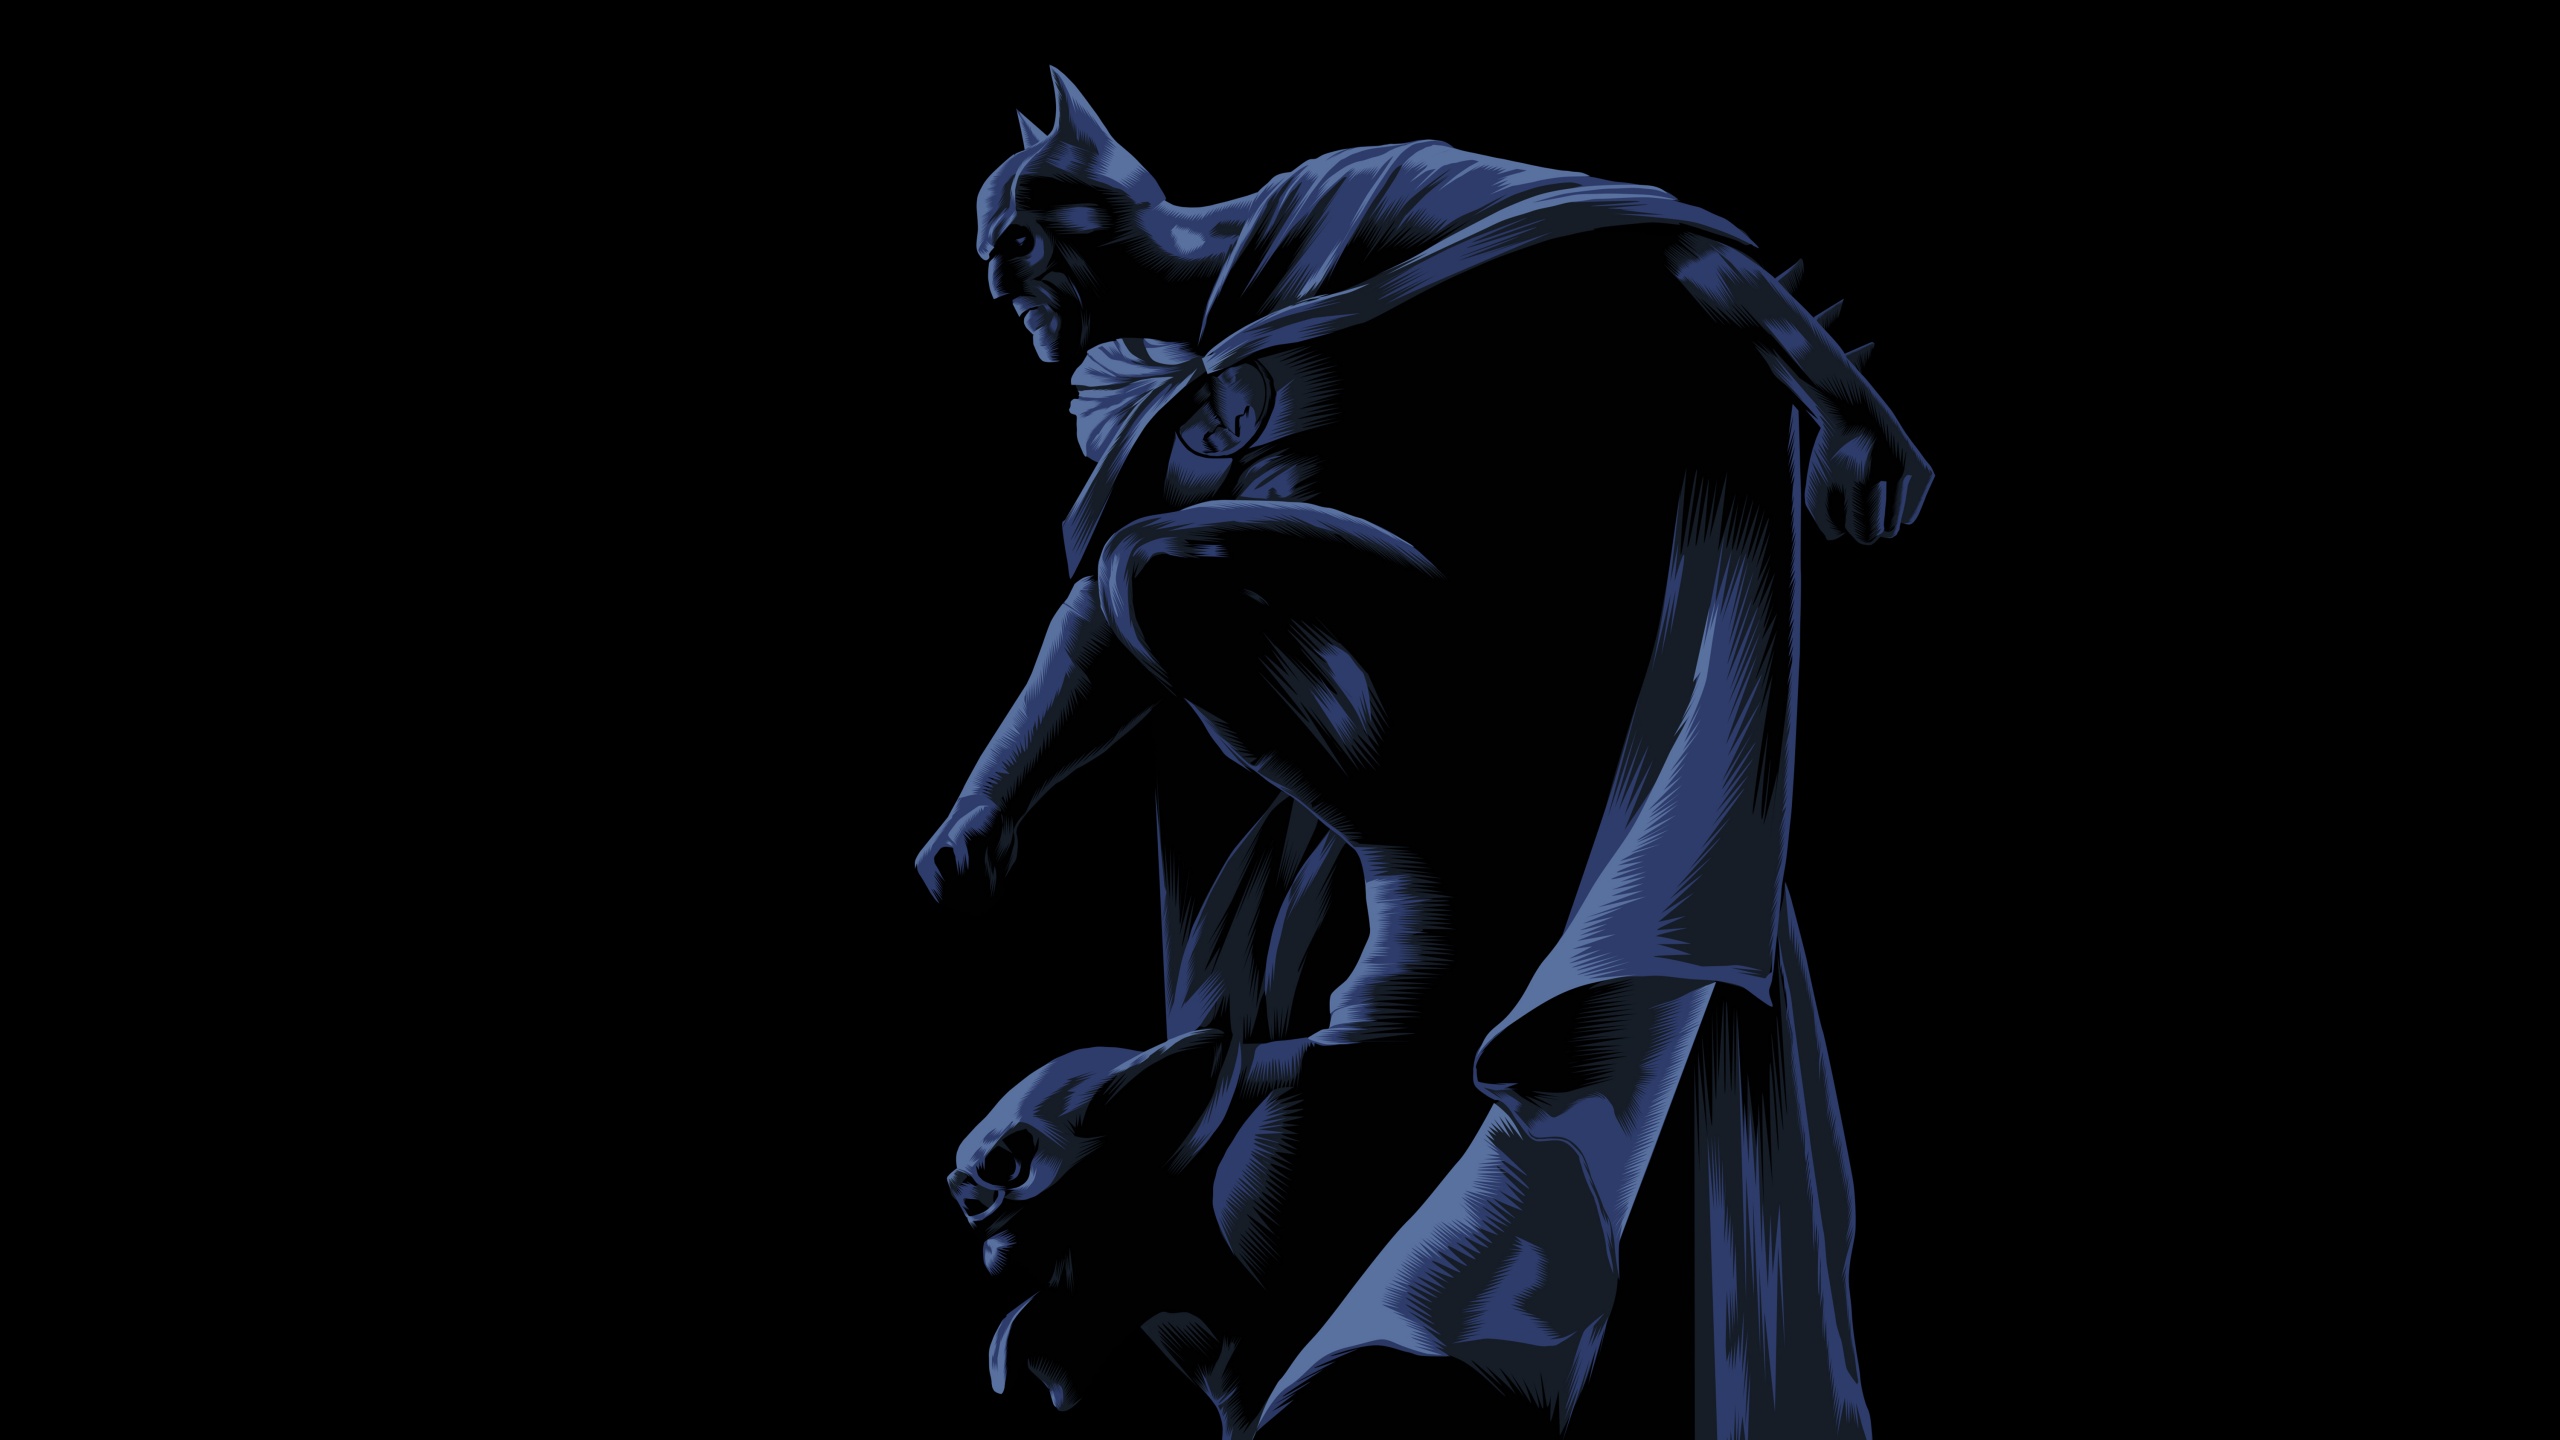 Batman Wallpaper 4K, DC Superheroes, Graphics CGI, #5952